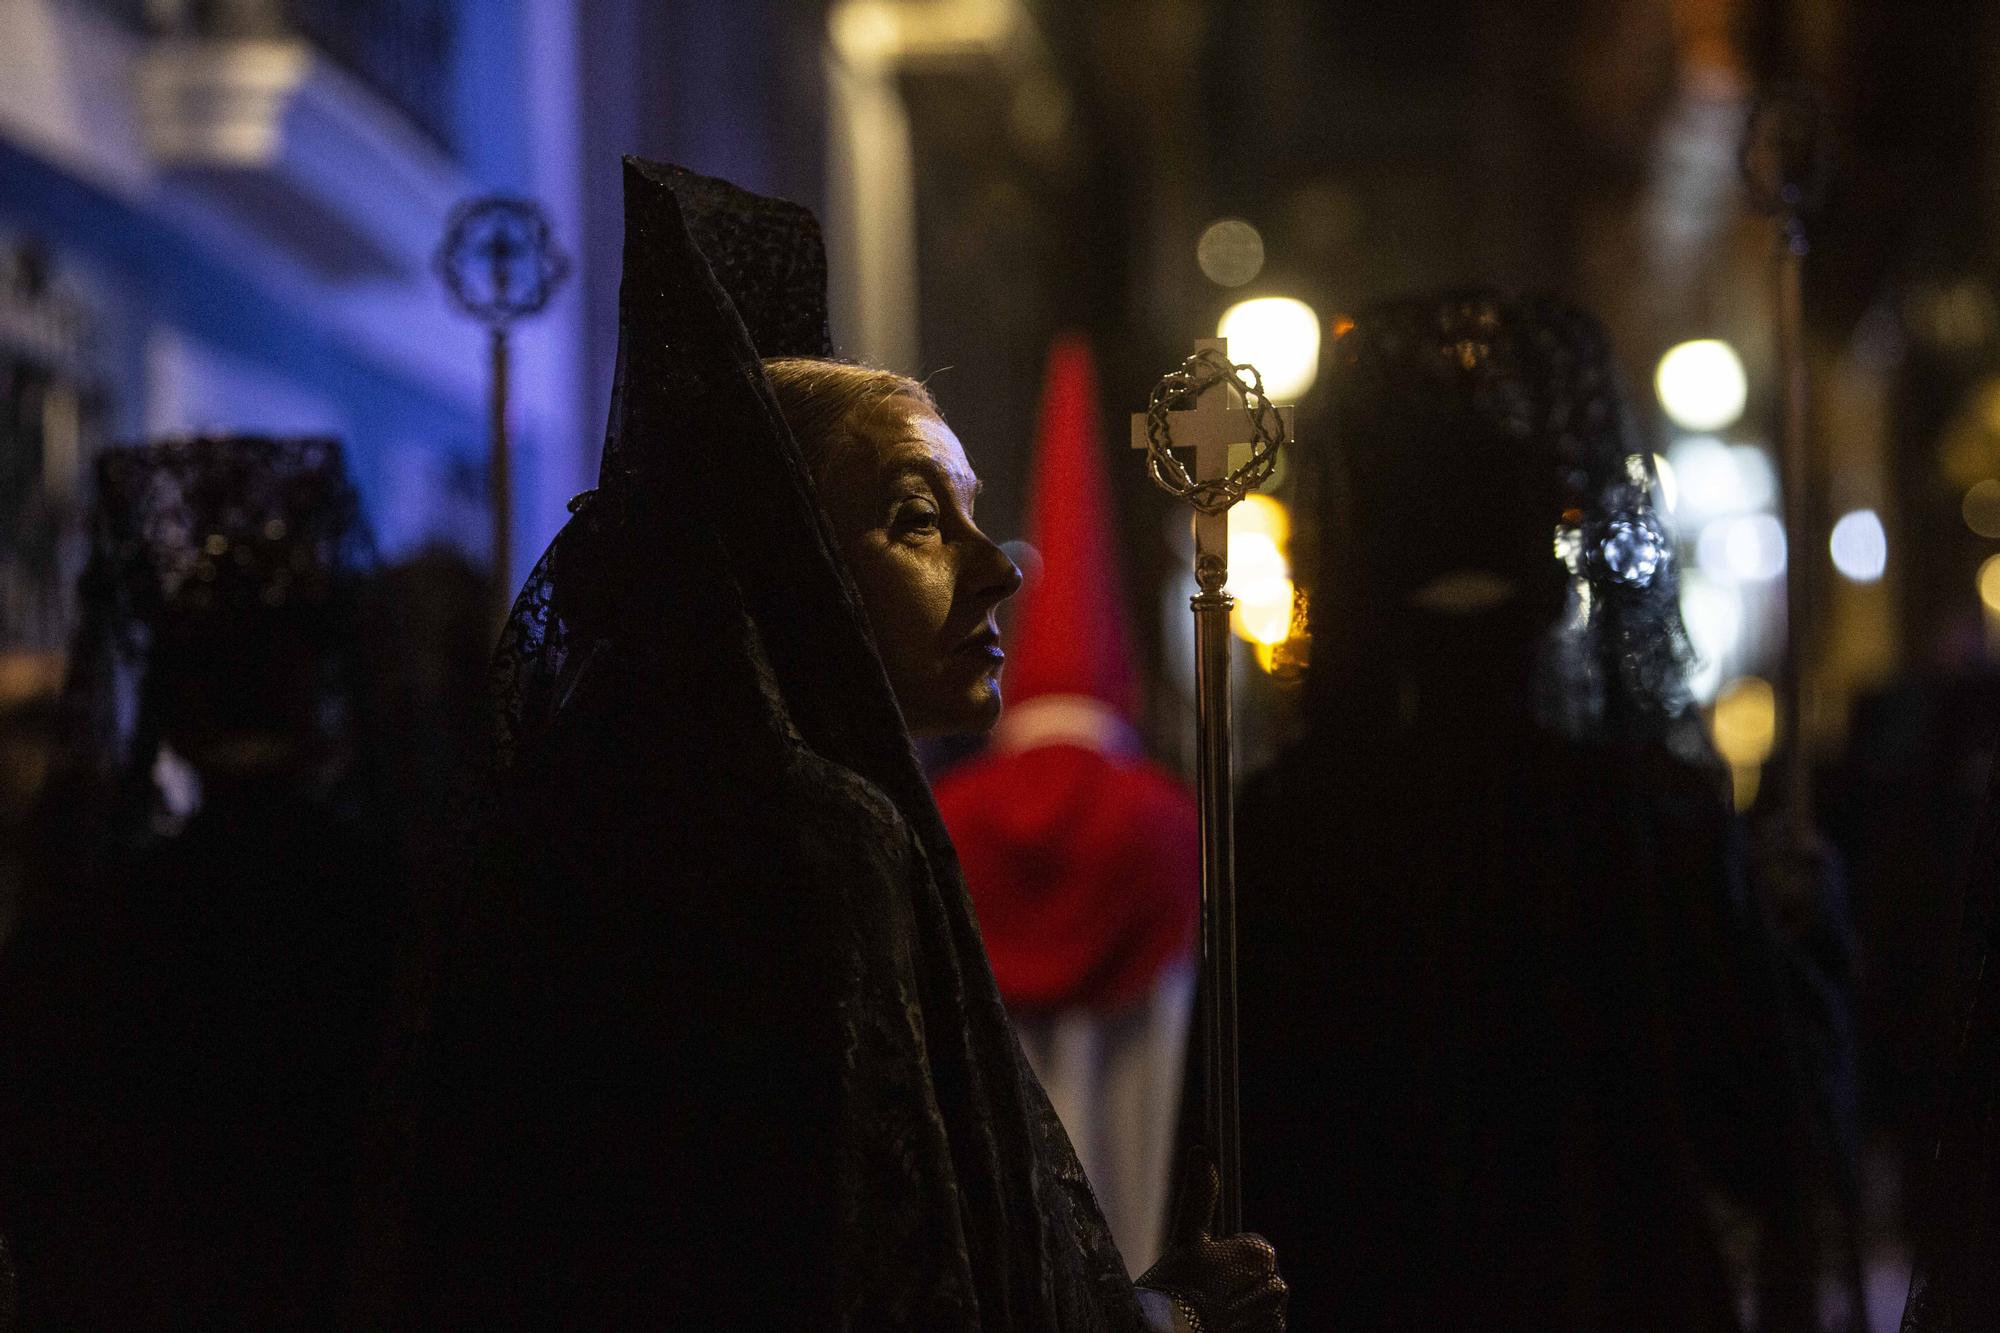 Procesión nocturna del Divino Amor "La Marinera" por las calles del barrio de Alicante